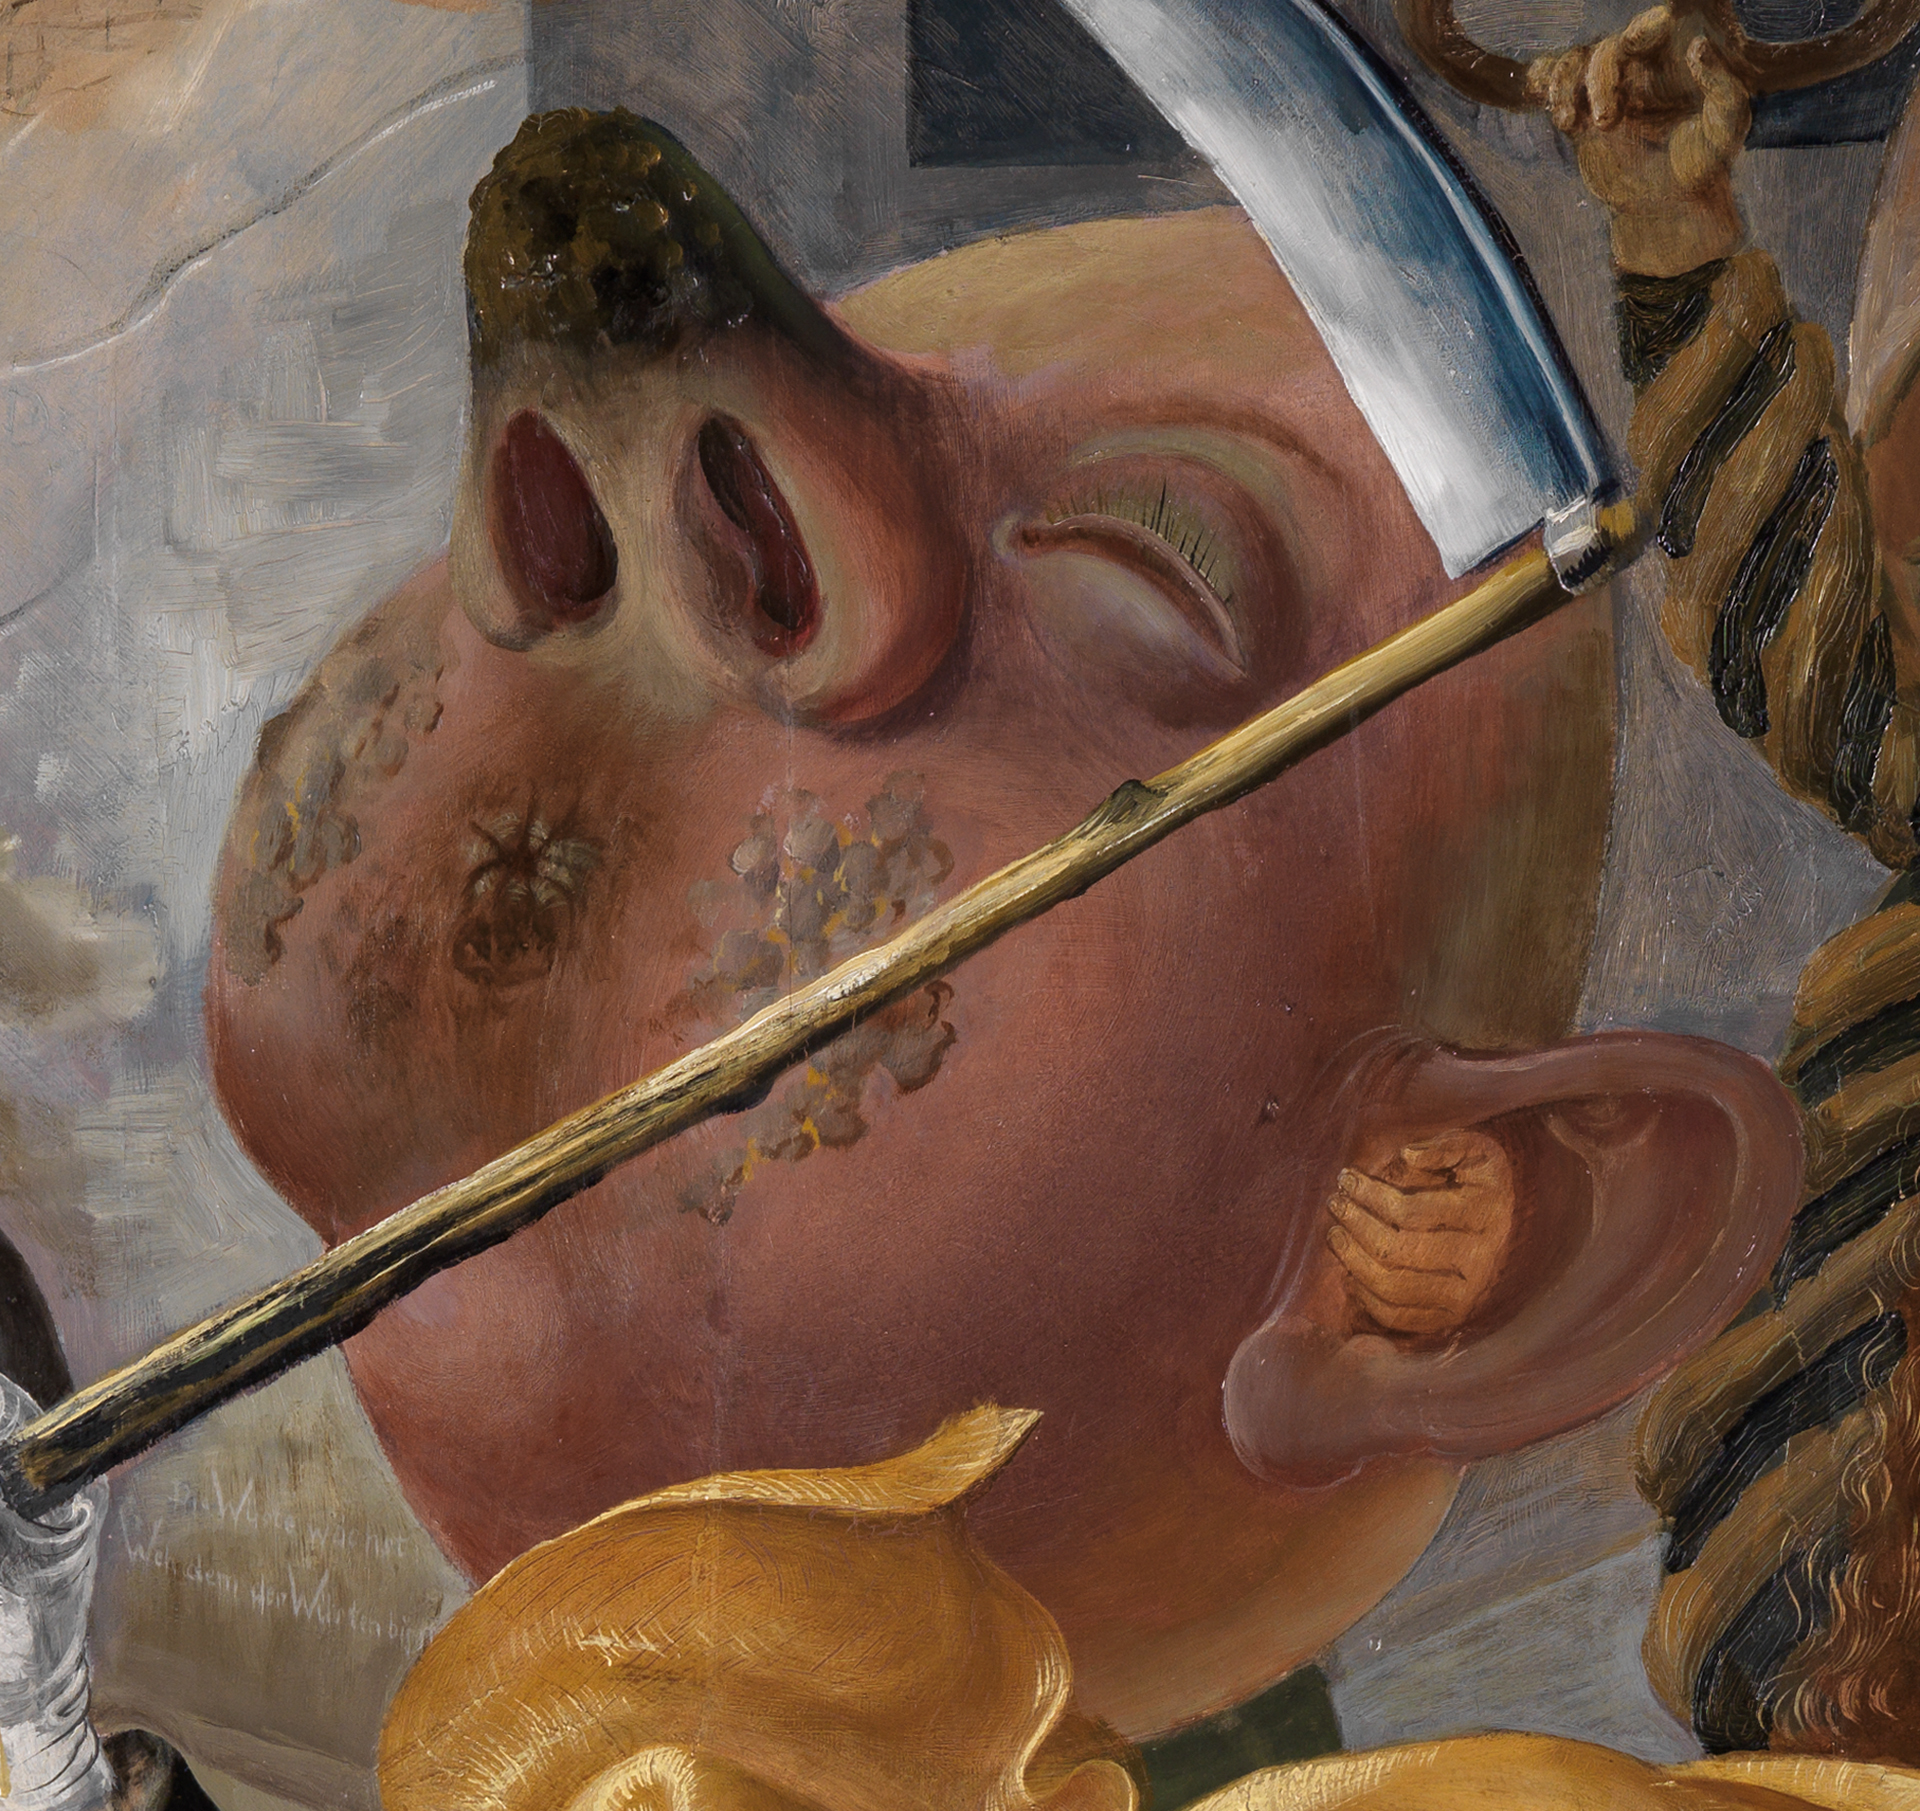 Ausschnitt aus Otto Dix‘ Gemälde Sieben Todsünden. Detail eines gesäßförmigen Kopfs.